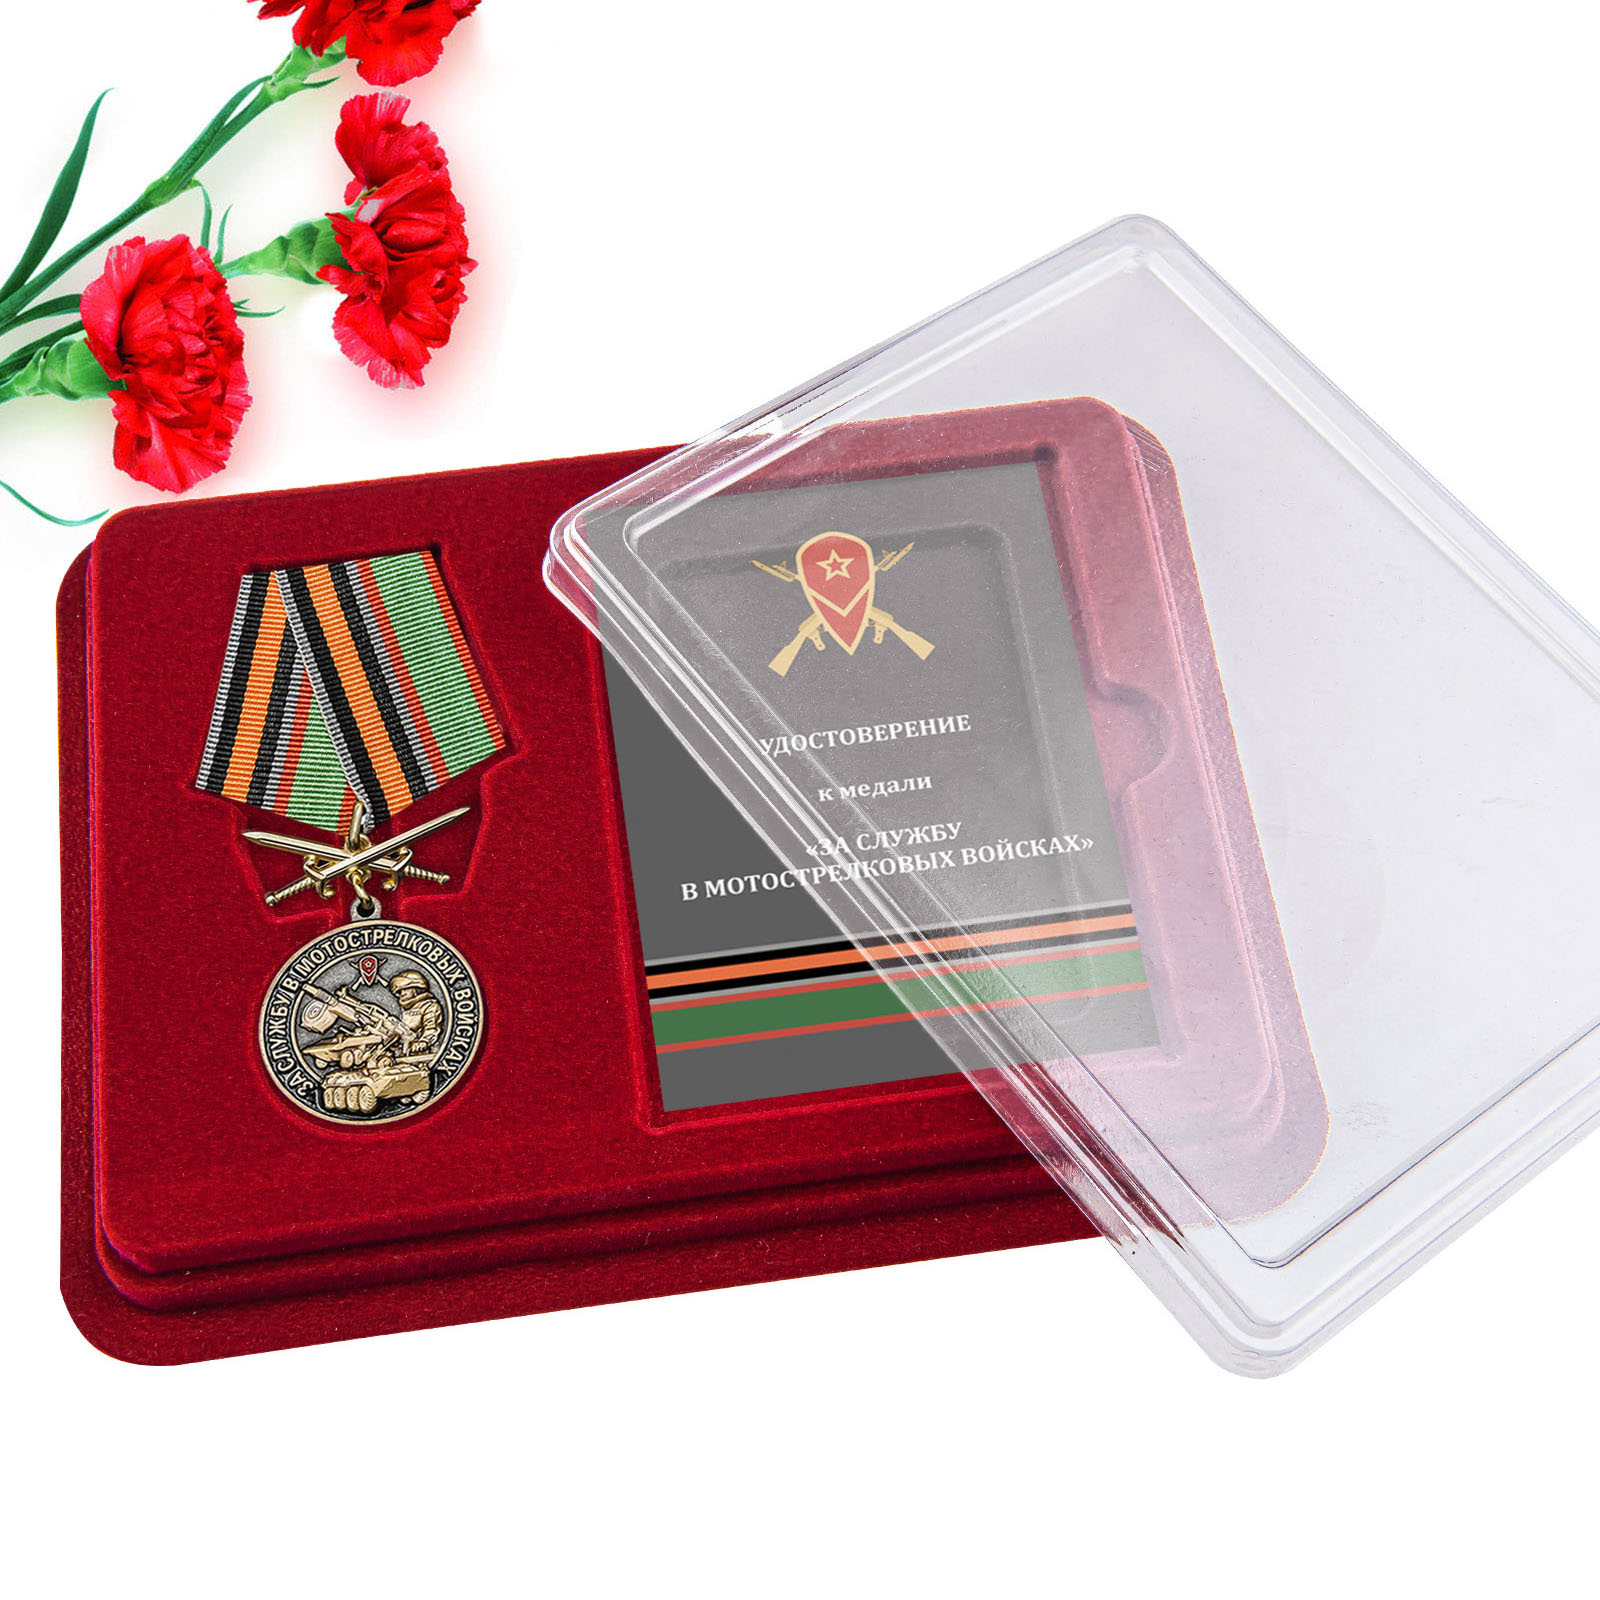 Купить медаль За службу в Мотострелковых войсках в подарок выгодно